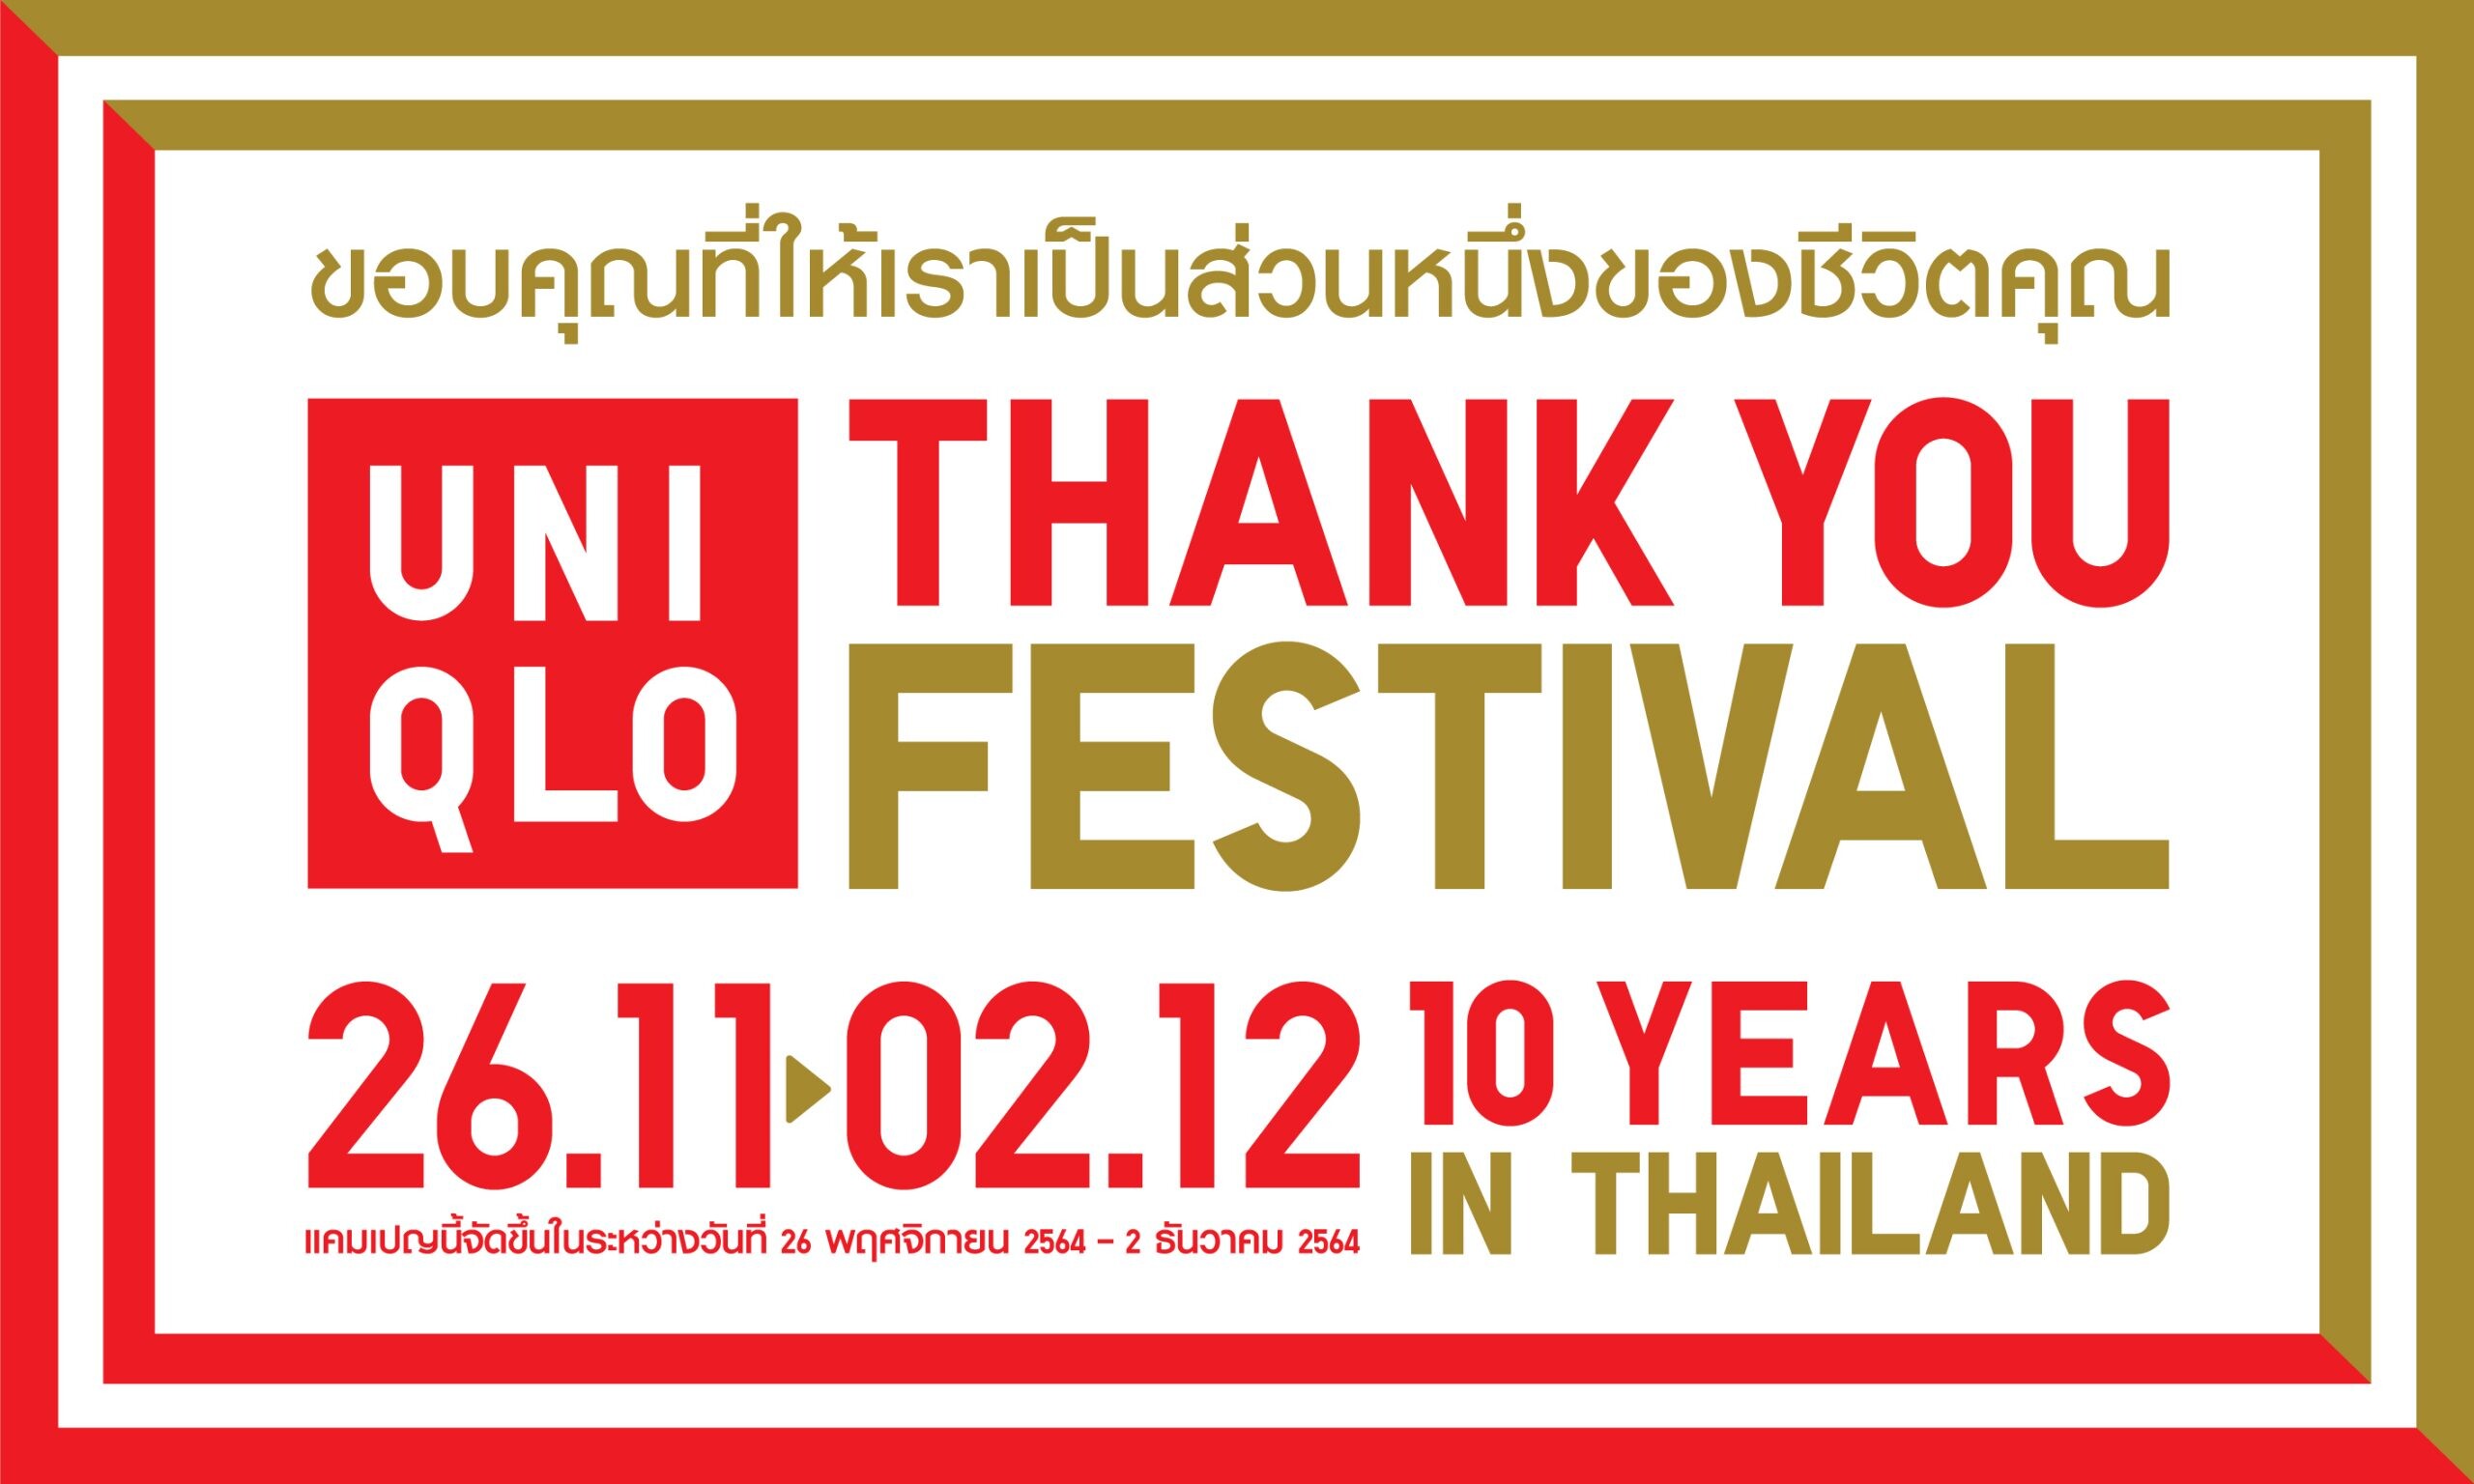 ยูนิโคล่ จัดงาน THANK YOU FESTIVAL ขอบคุณลูกค้าชาวไทยอย่างต่อเนื่อง               เฉพาะวันที่ 26 พฤศจิกายน - 2 ธันวาคม 2564 ที่ร้านยูนิโคล่และออนไลน์สโตร์